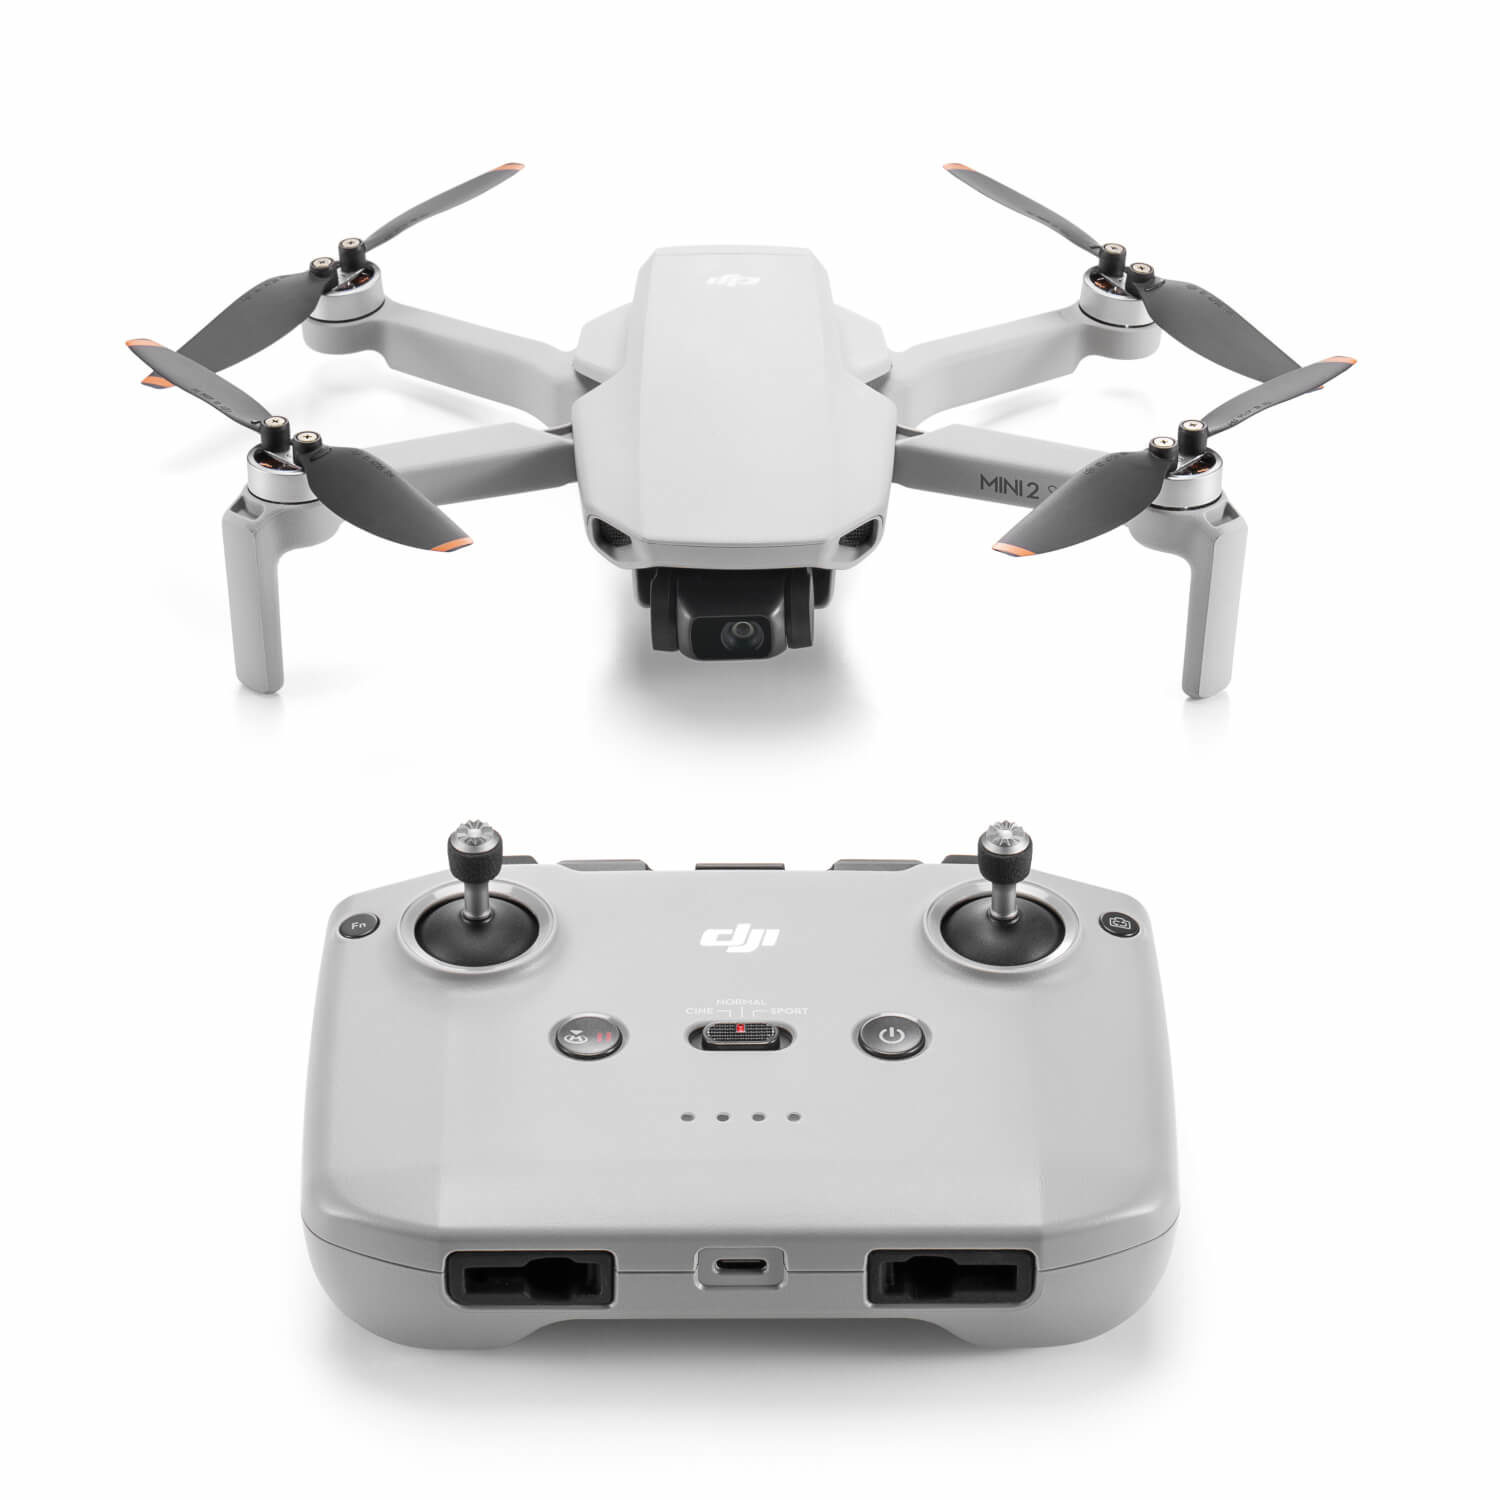 Mini 2 SE drone